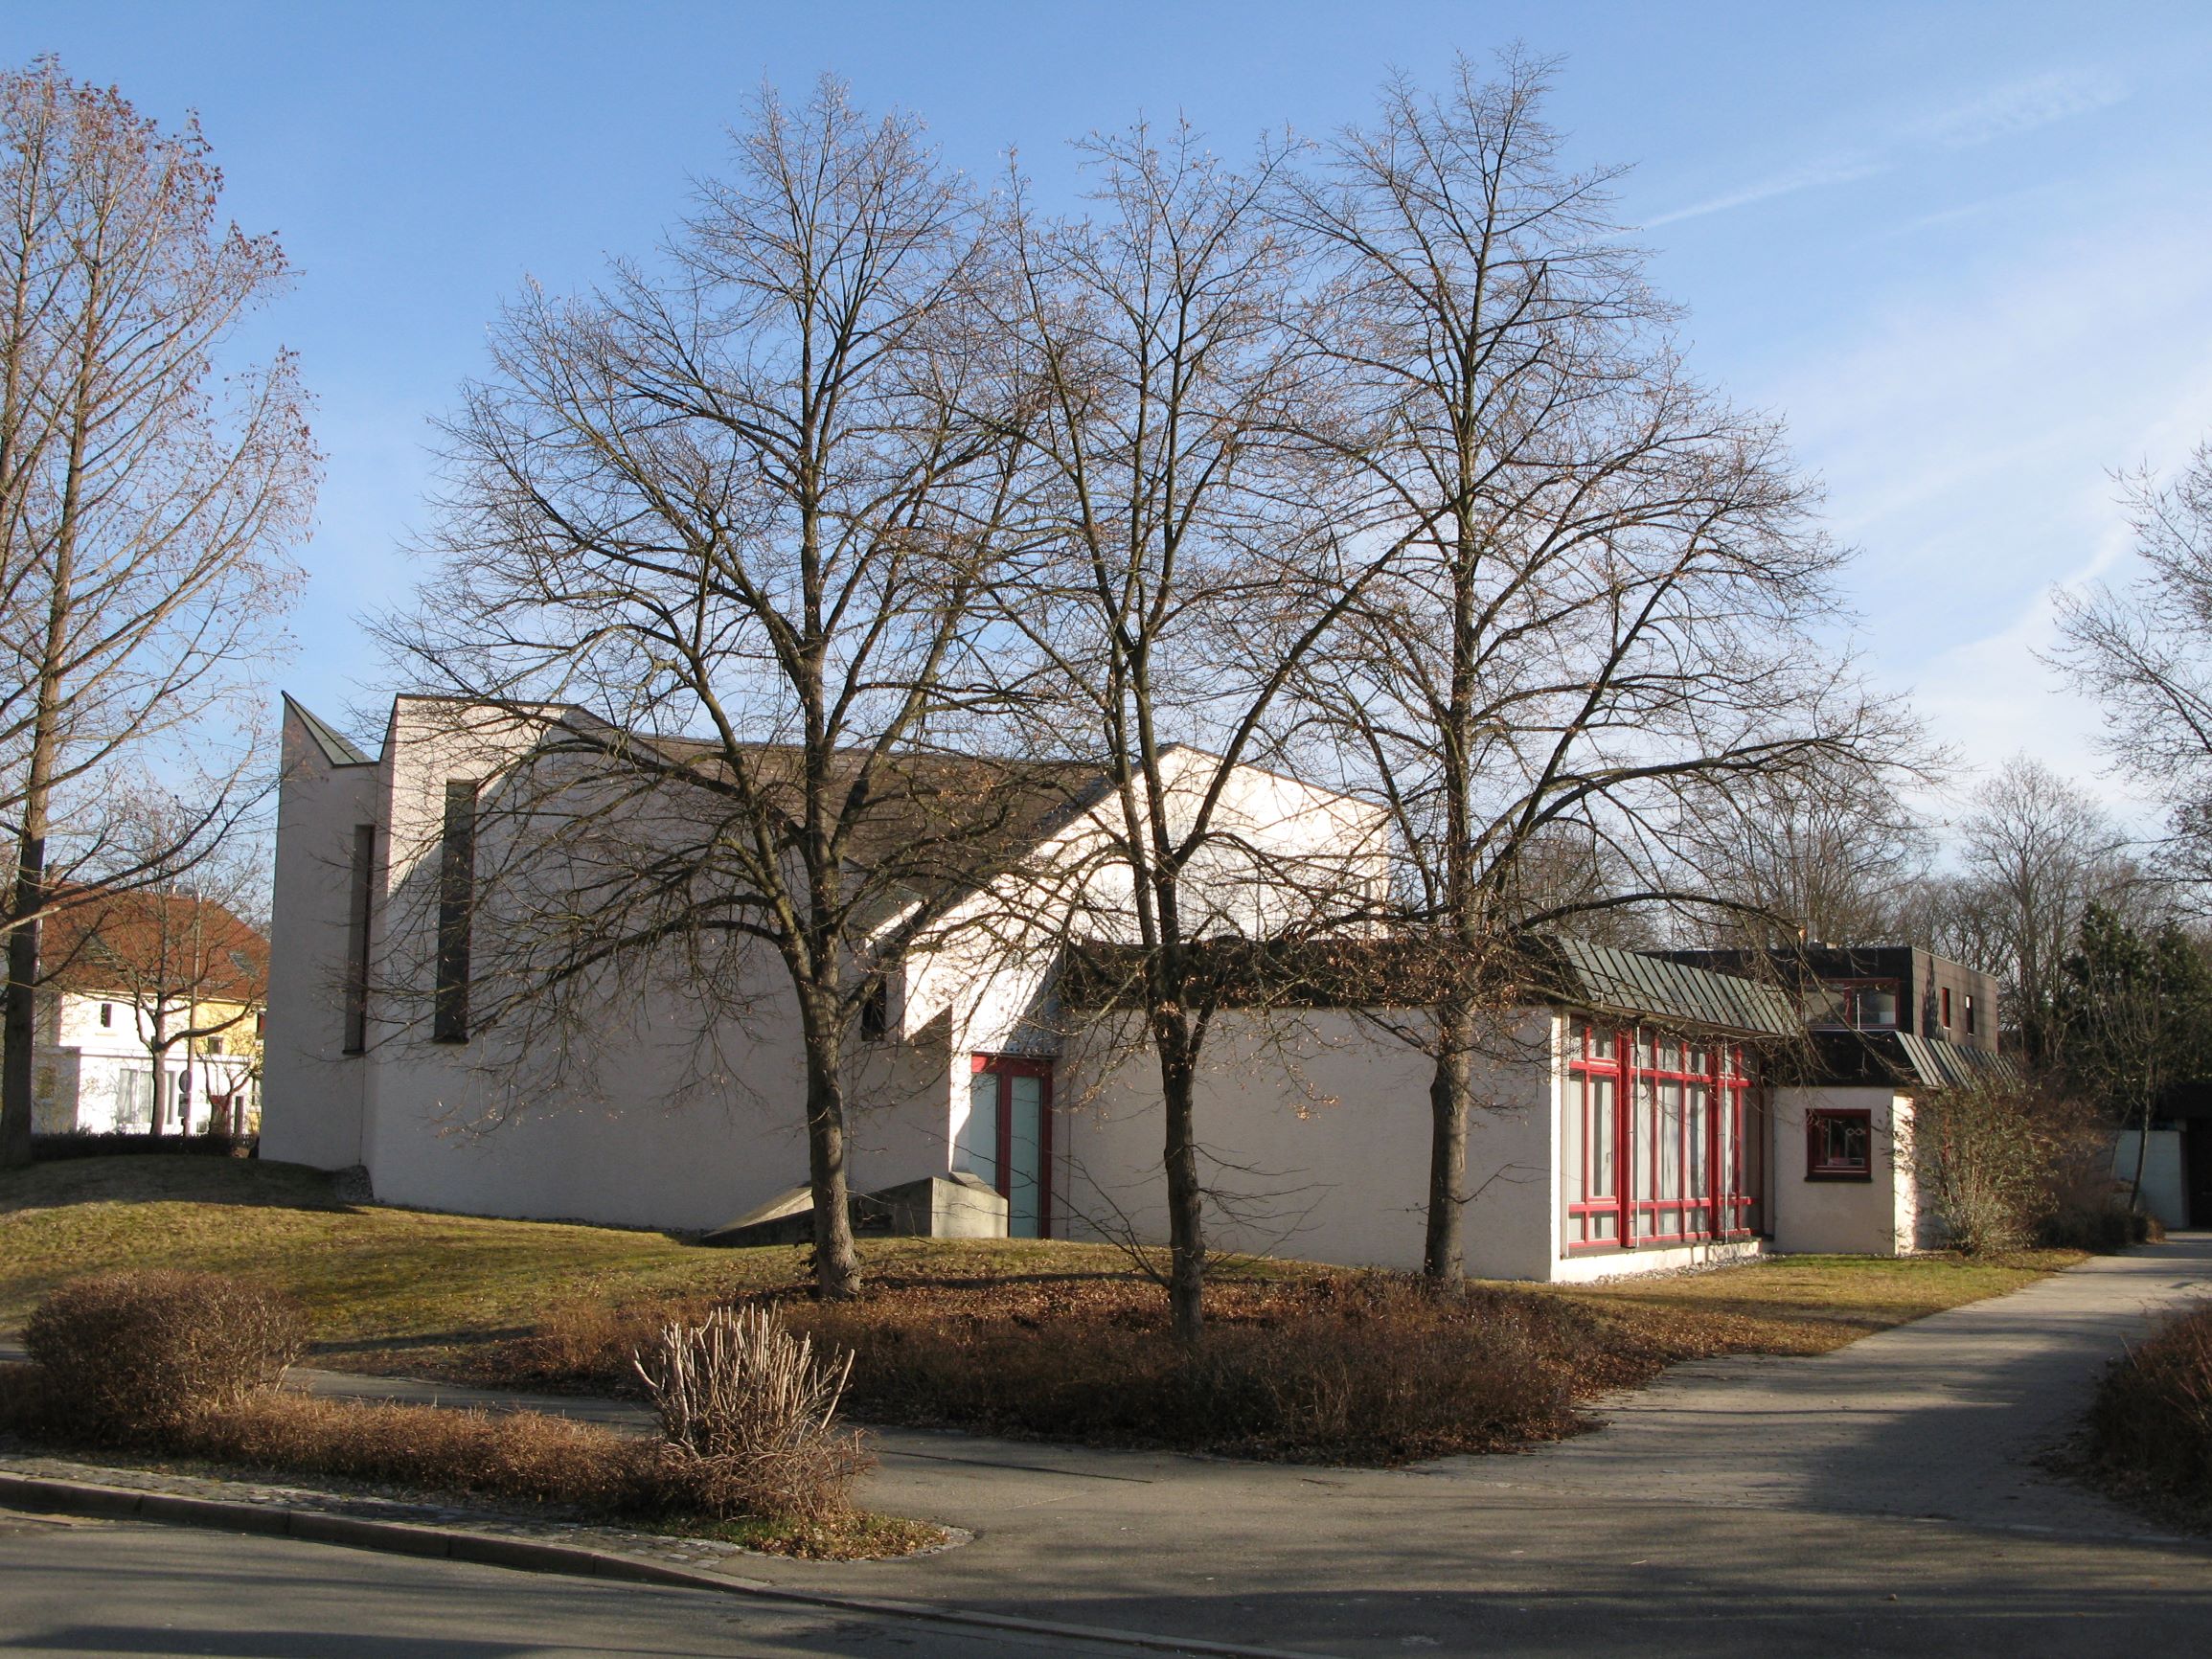 Primus-Truber-Haus - Evangelische Kirchengemeinde Derendingen, Heinlenstraße 40 in Tübingen